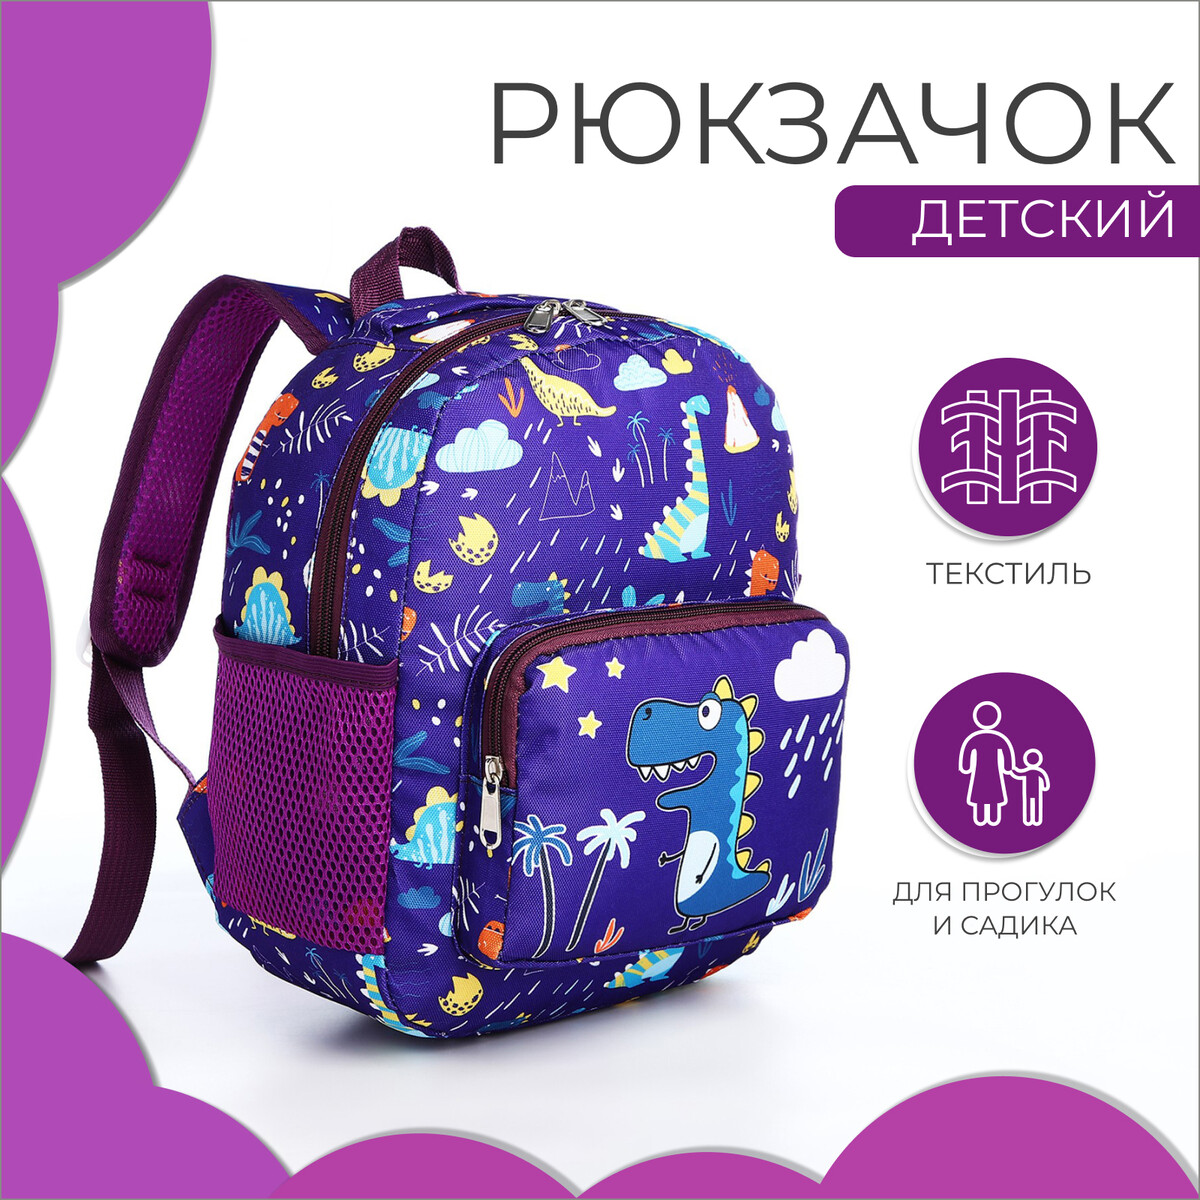 Рюкзак детский на молнии, 3 наружных кармана, цвет фиолетовый сумка спортивная на молнии 2 наружных кармана фиолетовый